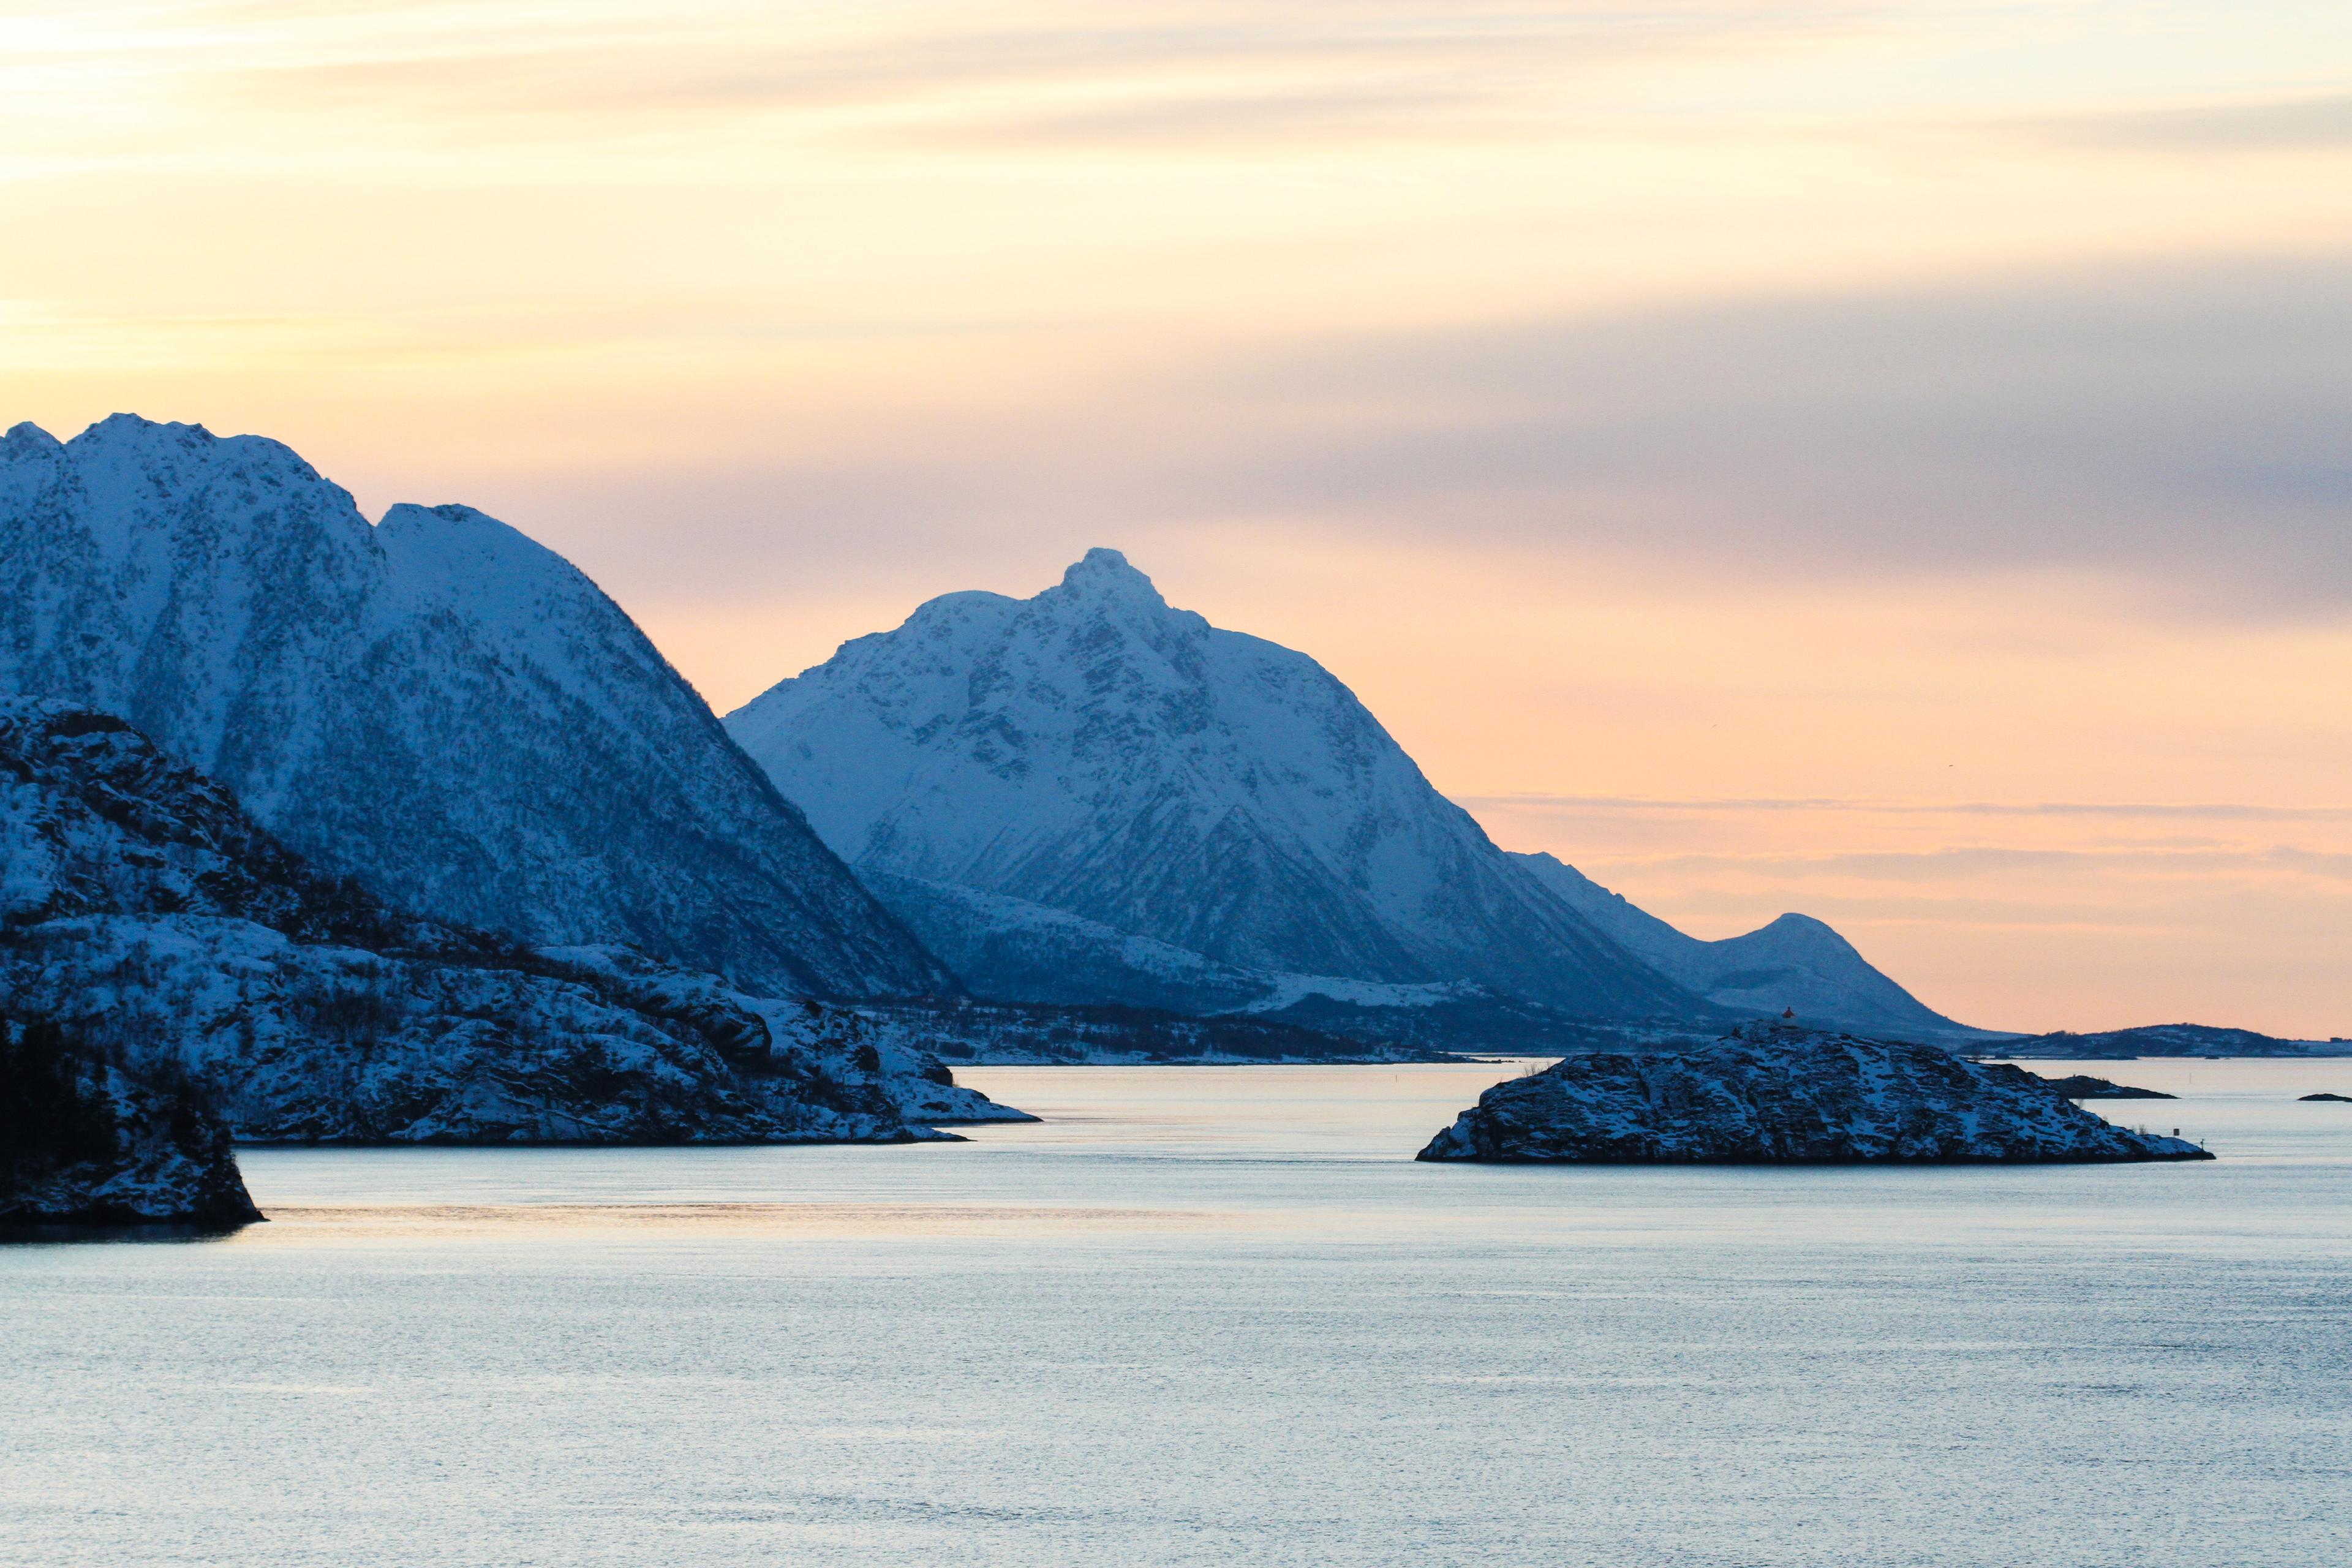 En tur med Hurtigruten i Nord-Norge er noe alle bør få med seg minst en gang i livet. Foto: Runar Larsen